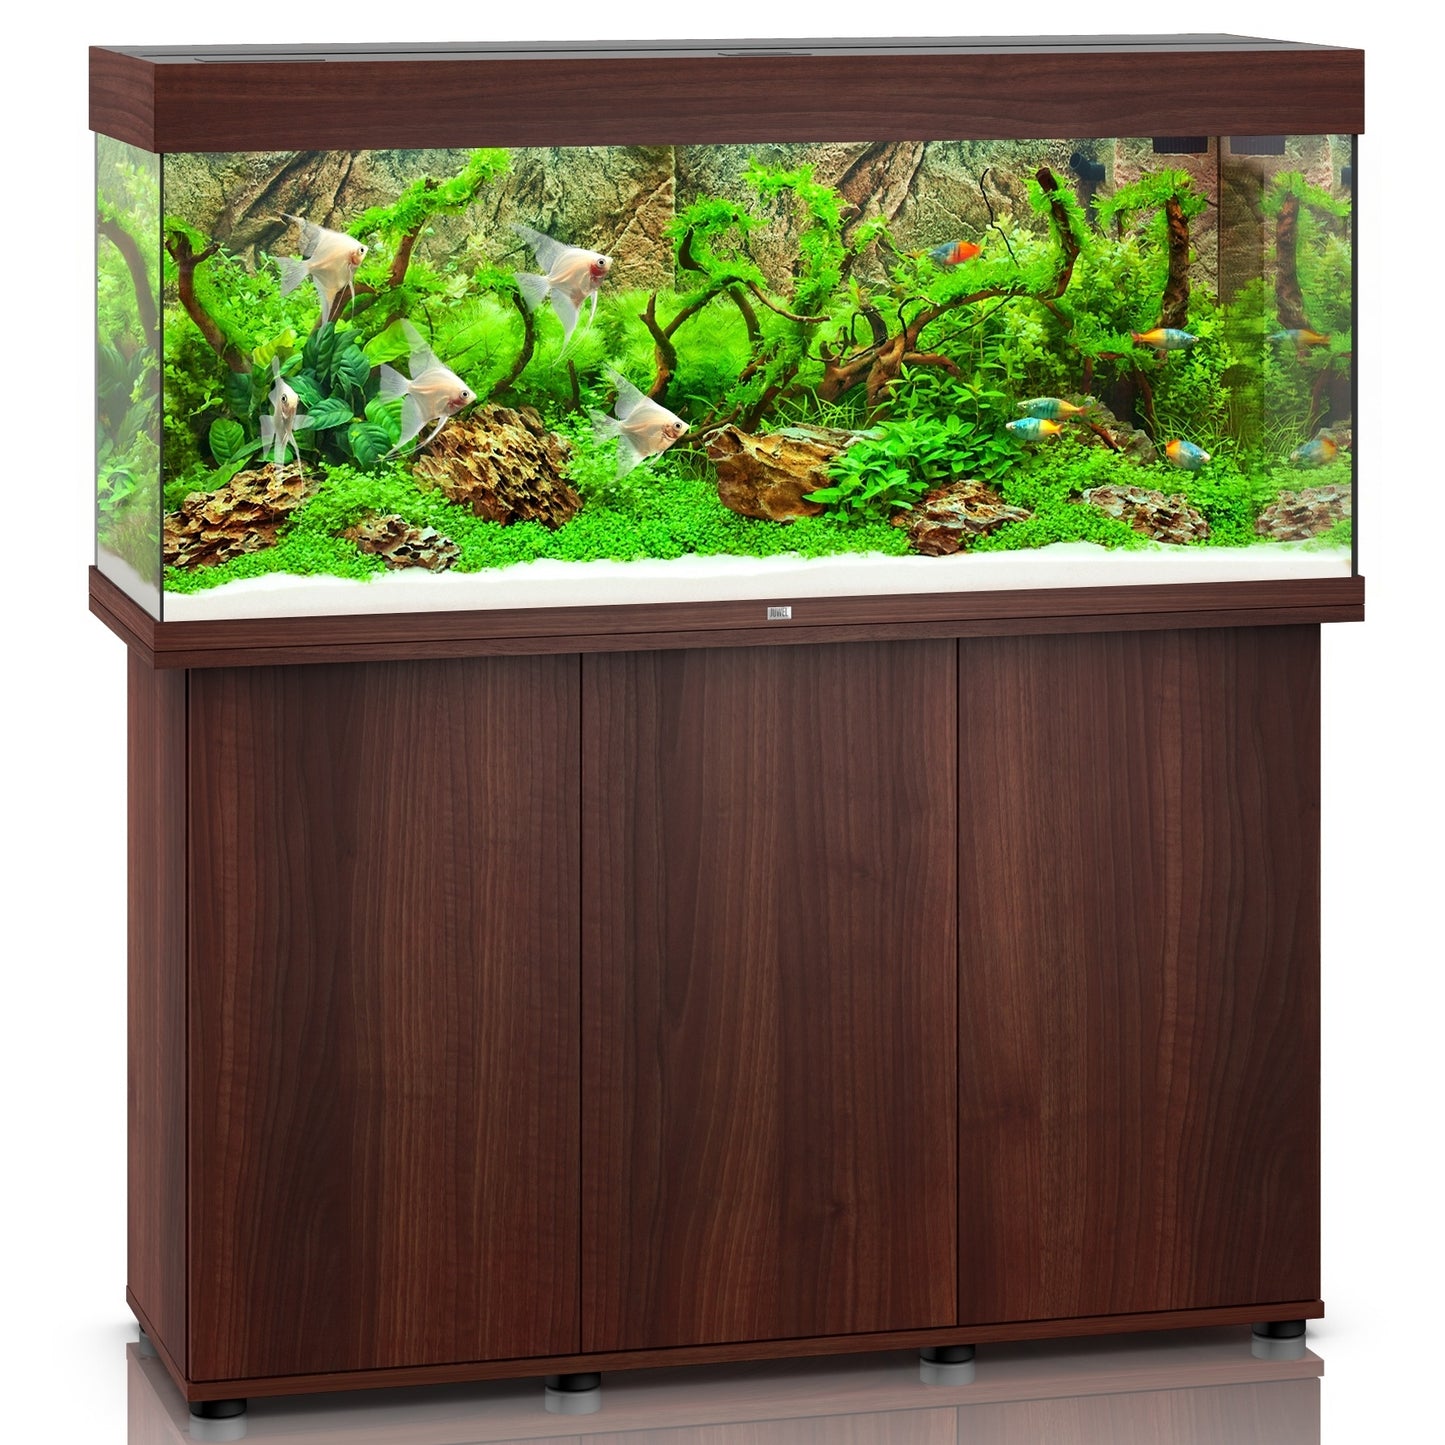 Juwel Aquarium & Cabinet Rio 240 LED / Dark Wood